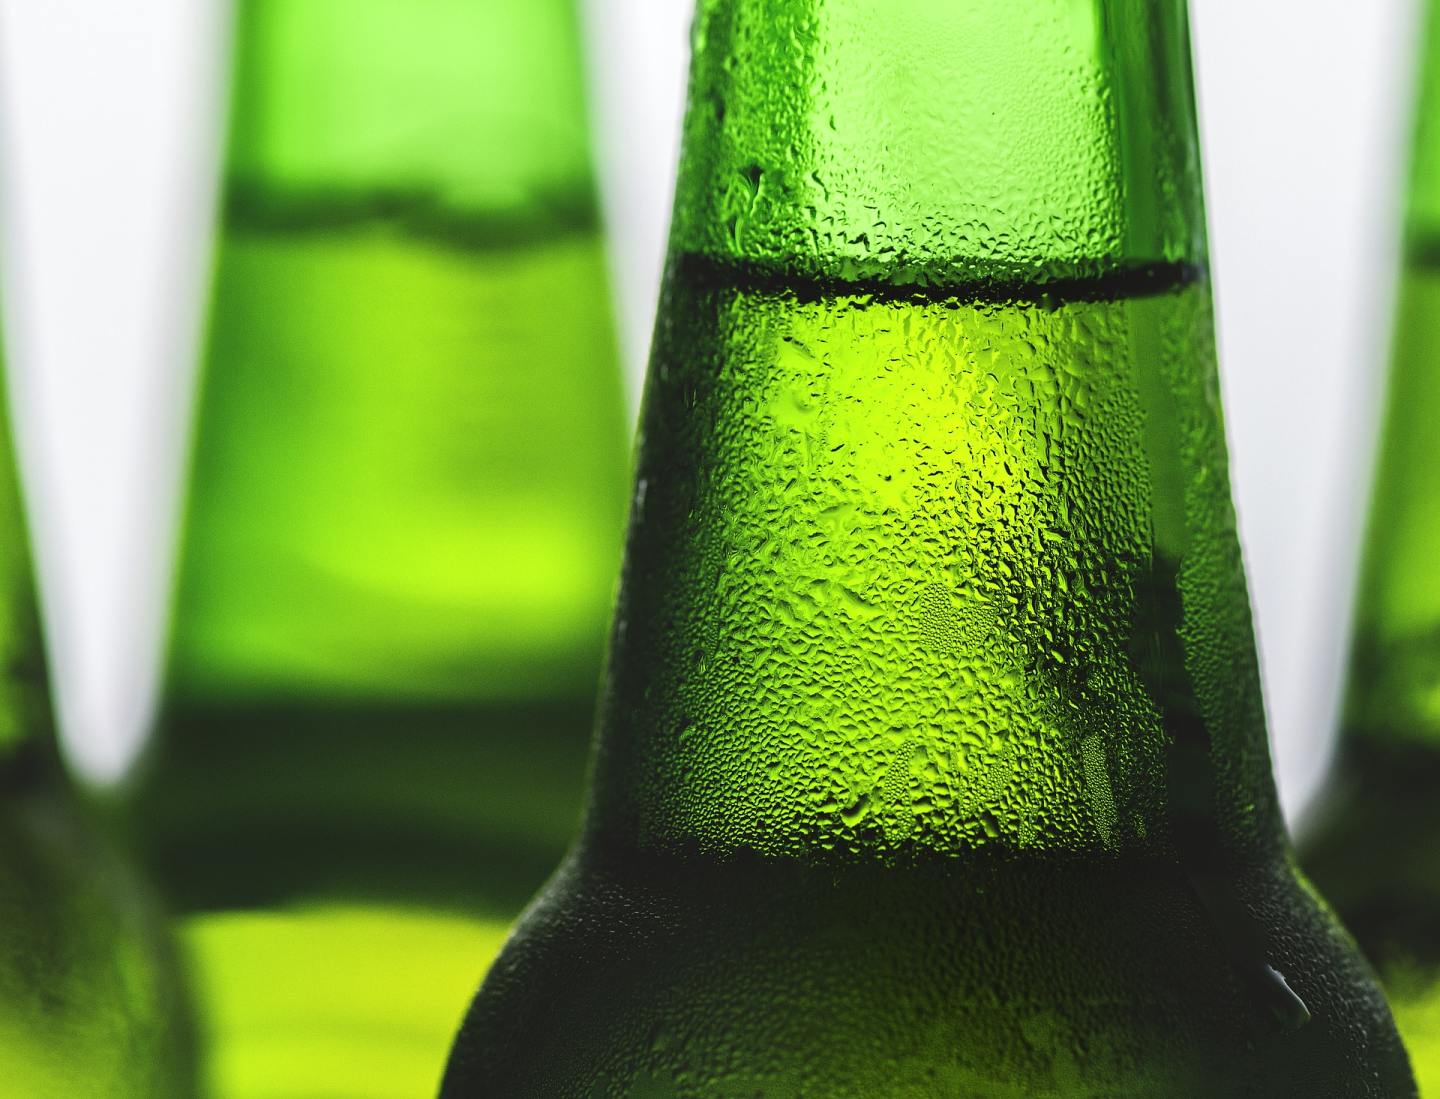 Вы и алкоголь: как выпивка влияет на организм